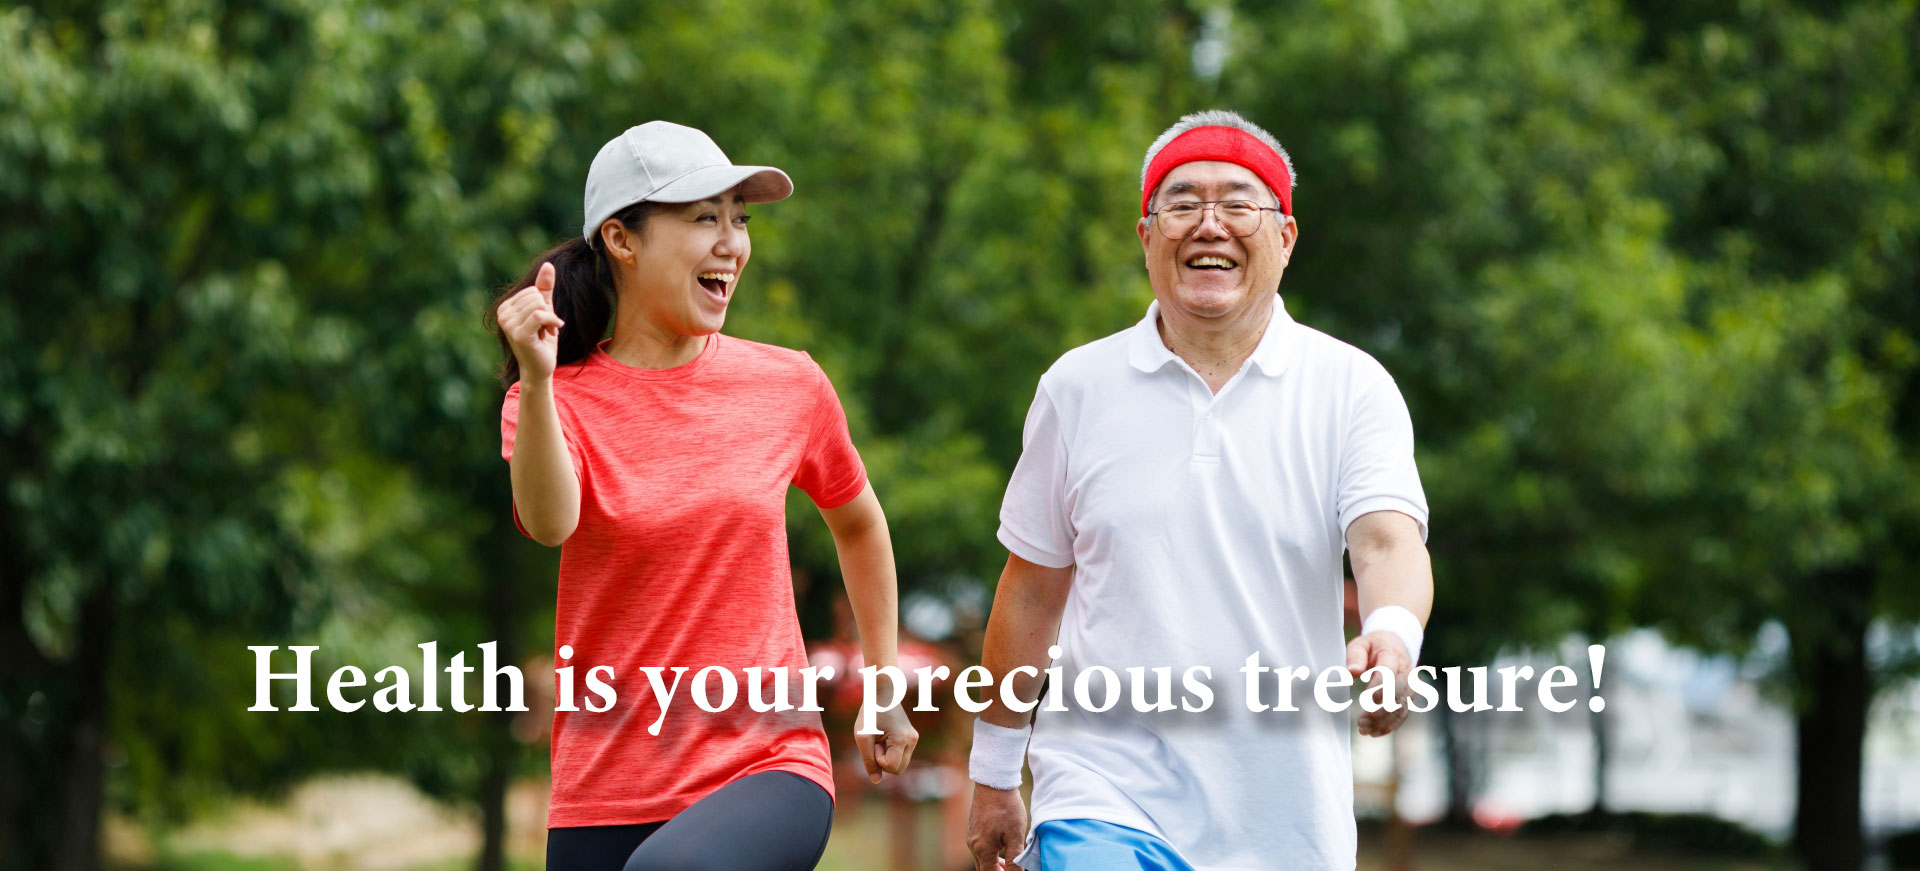 Health is your precious treasure!